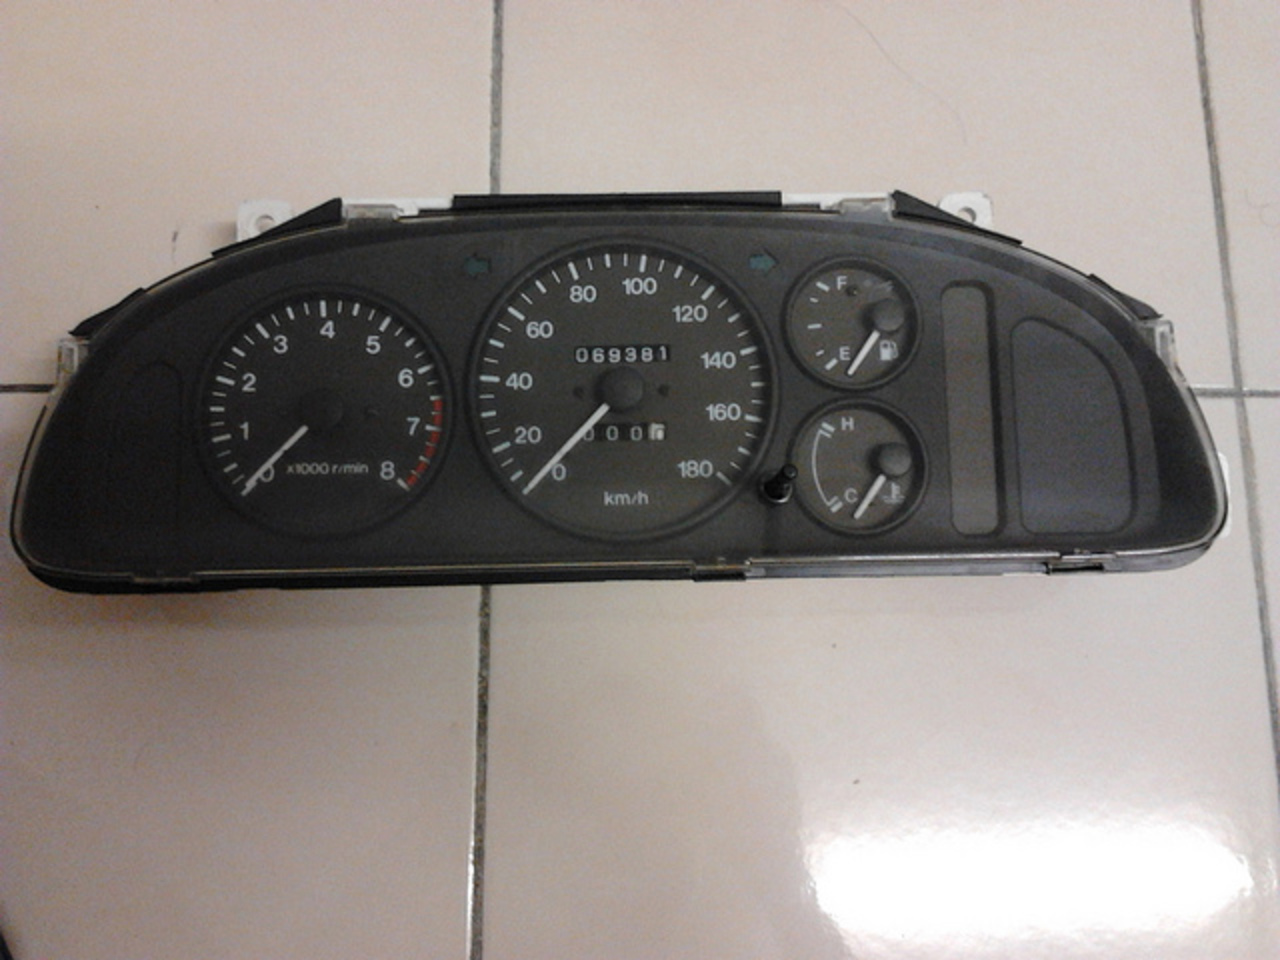 meter mazda lantis 1.6 manual RM350 | Flickr - Photo Sharing!